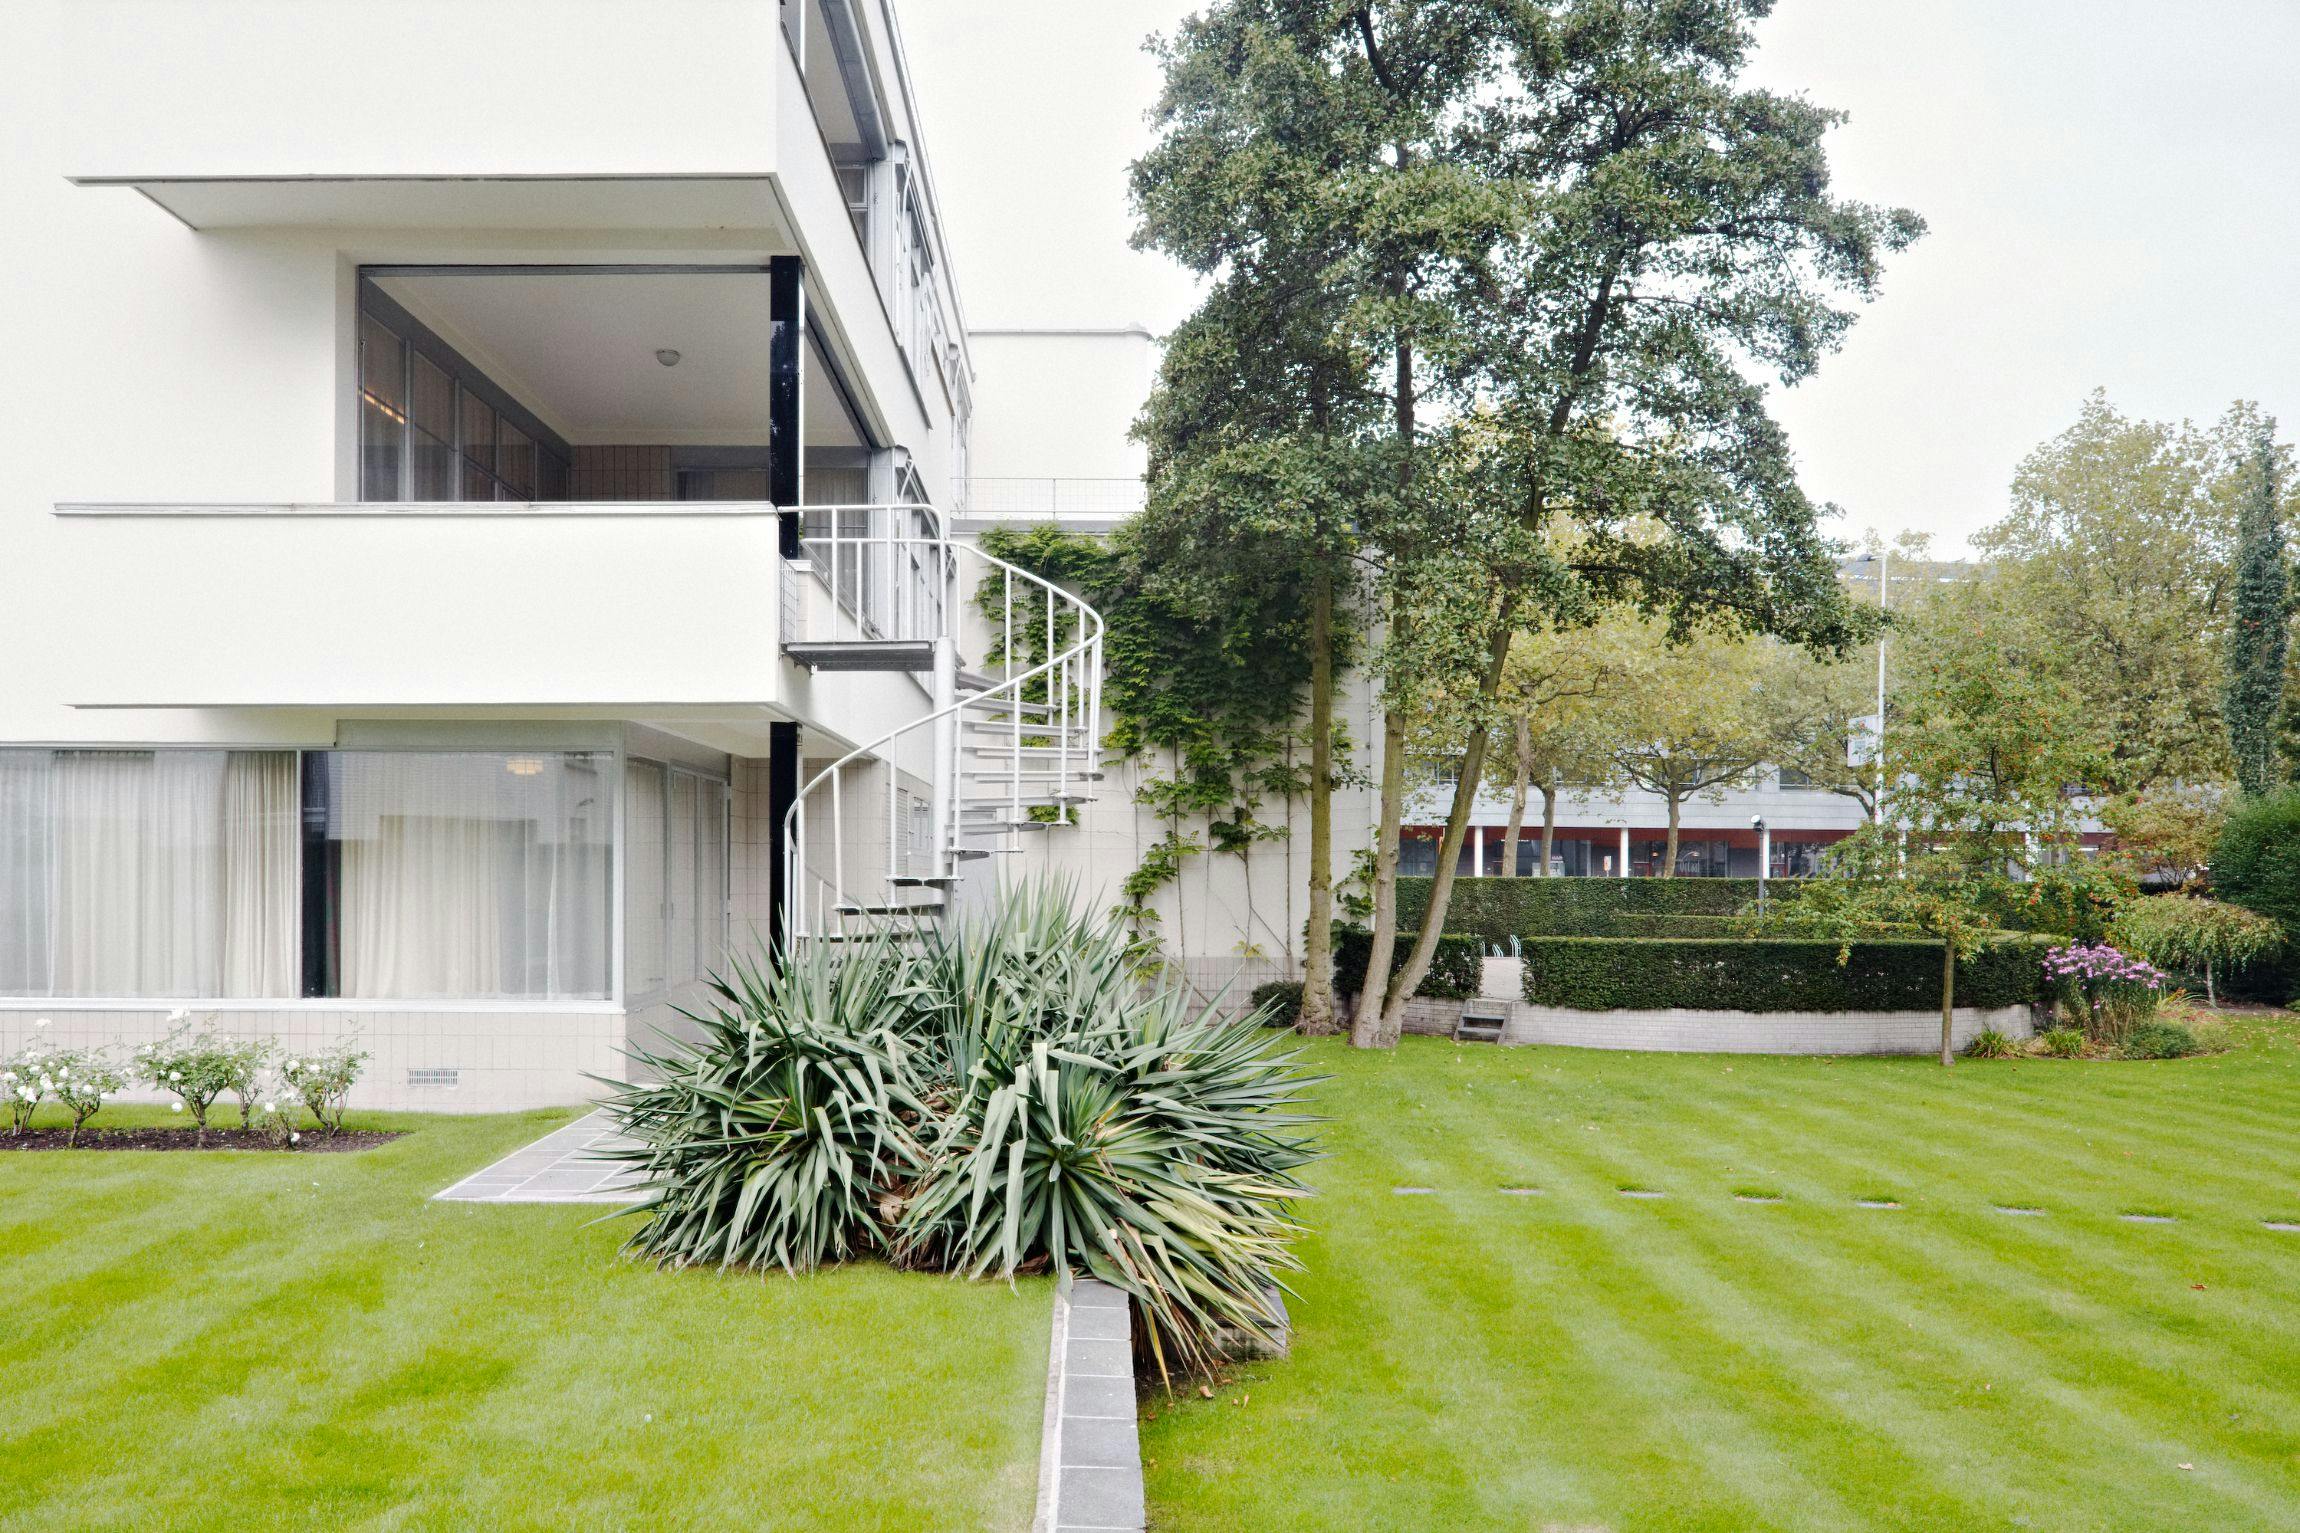 Sonneveld House, exterior and garden. Architecture by Brinkman and Van der Vlugt. Photo Johannes Schwartz 